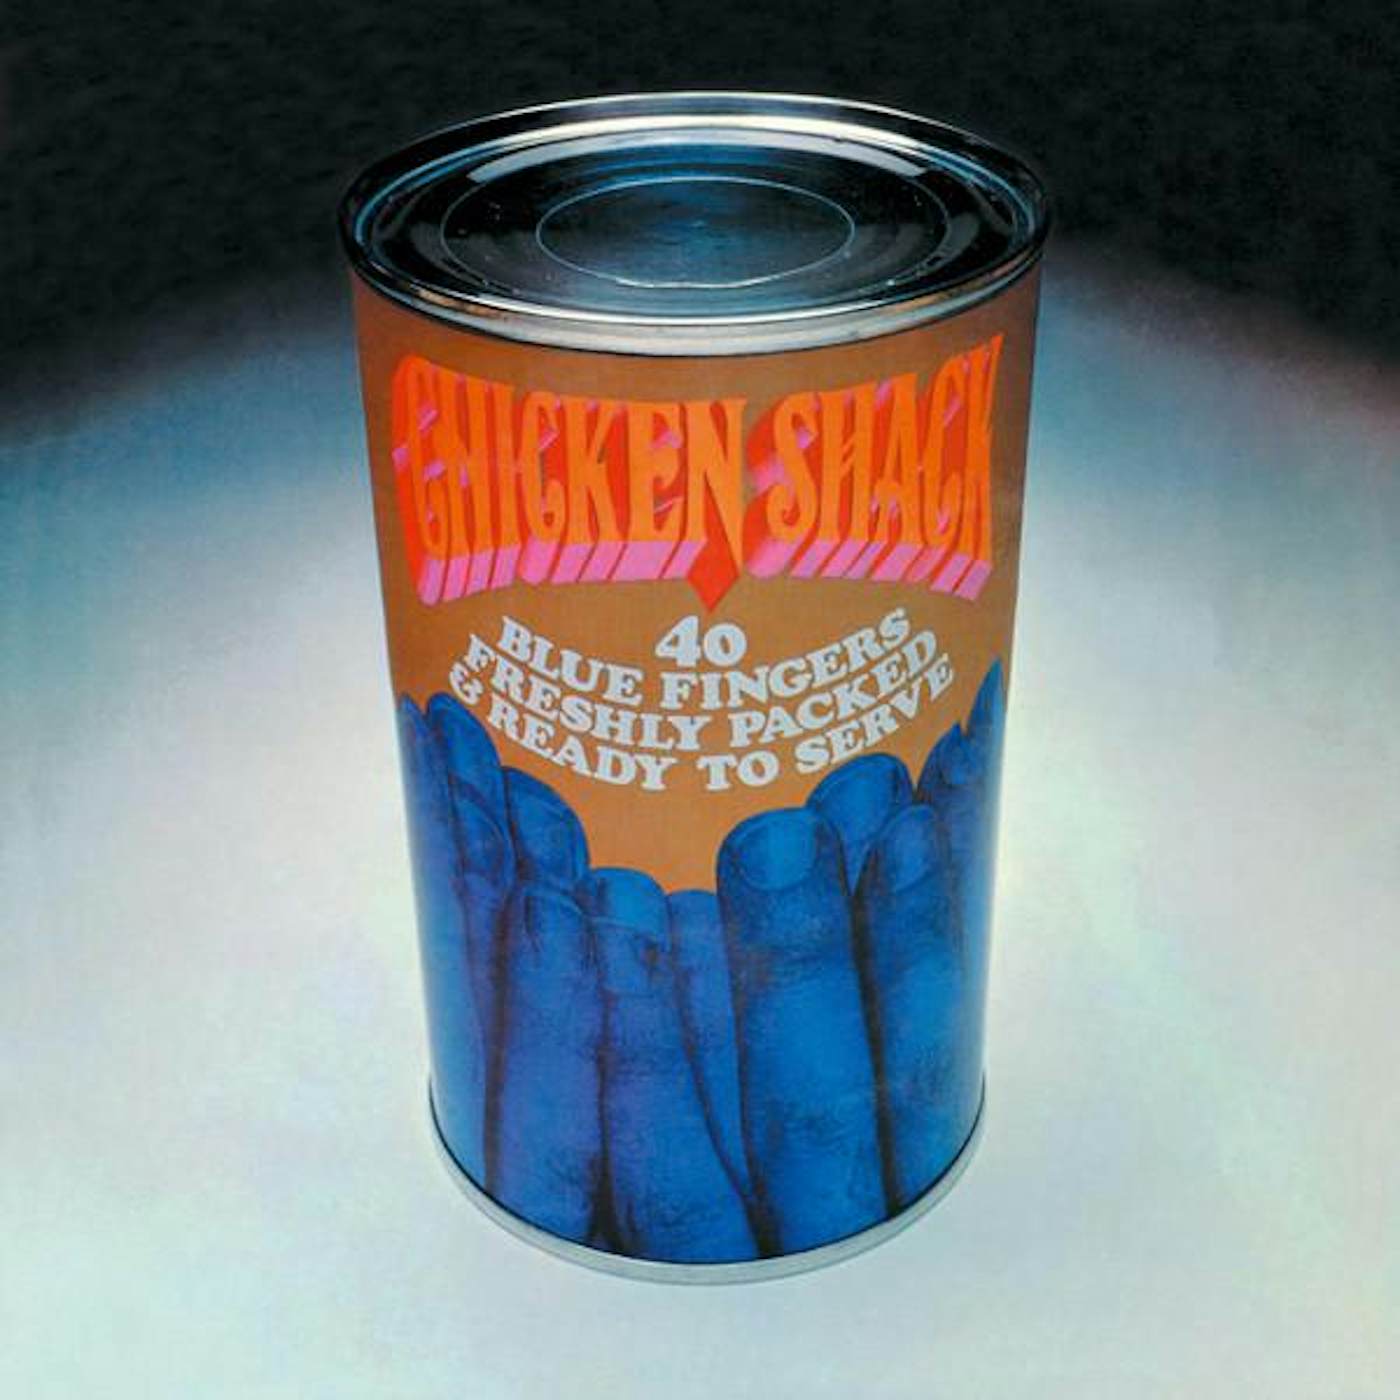 Chicken Shack 40 BLUE FINGERS FRESHLY PACKED… (SILVER & BLACK VINYL/180G) Vinyl Record